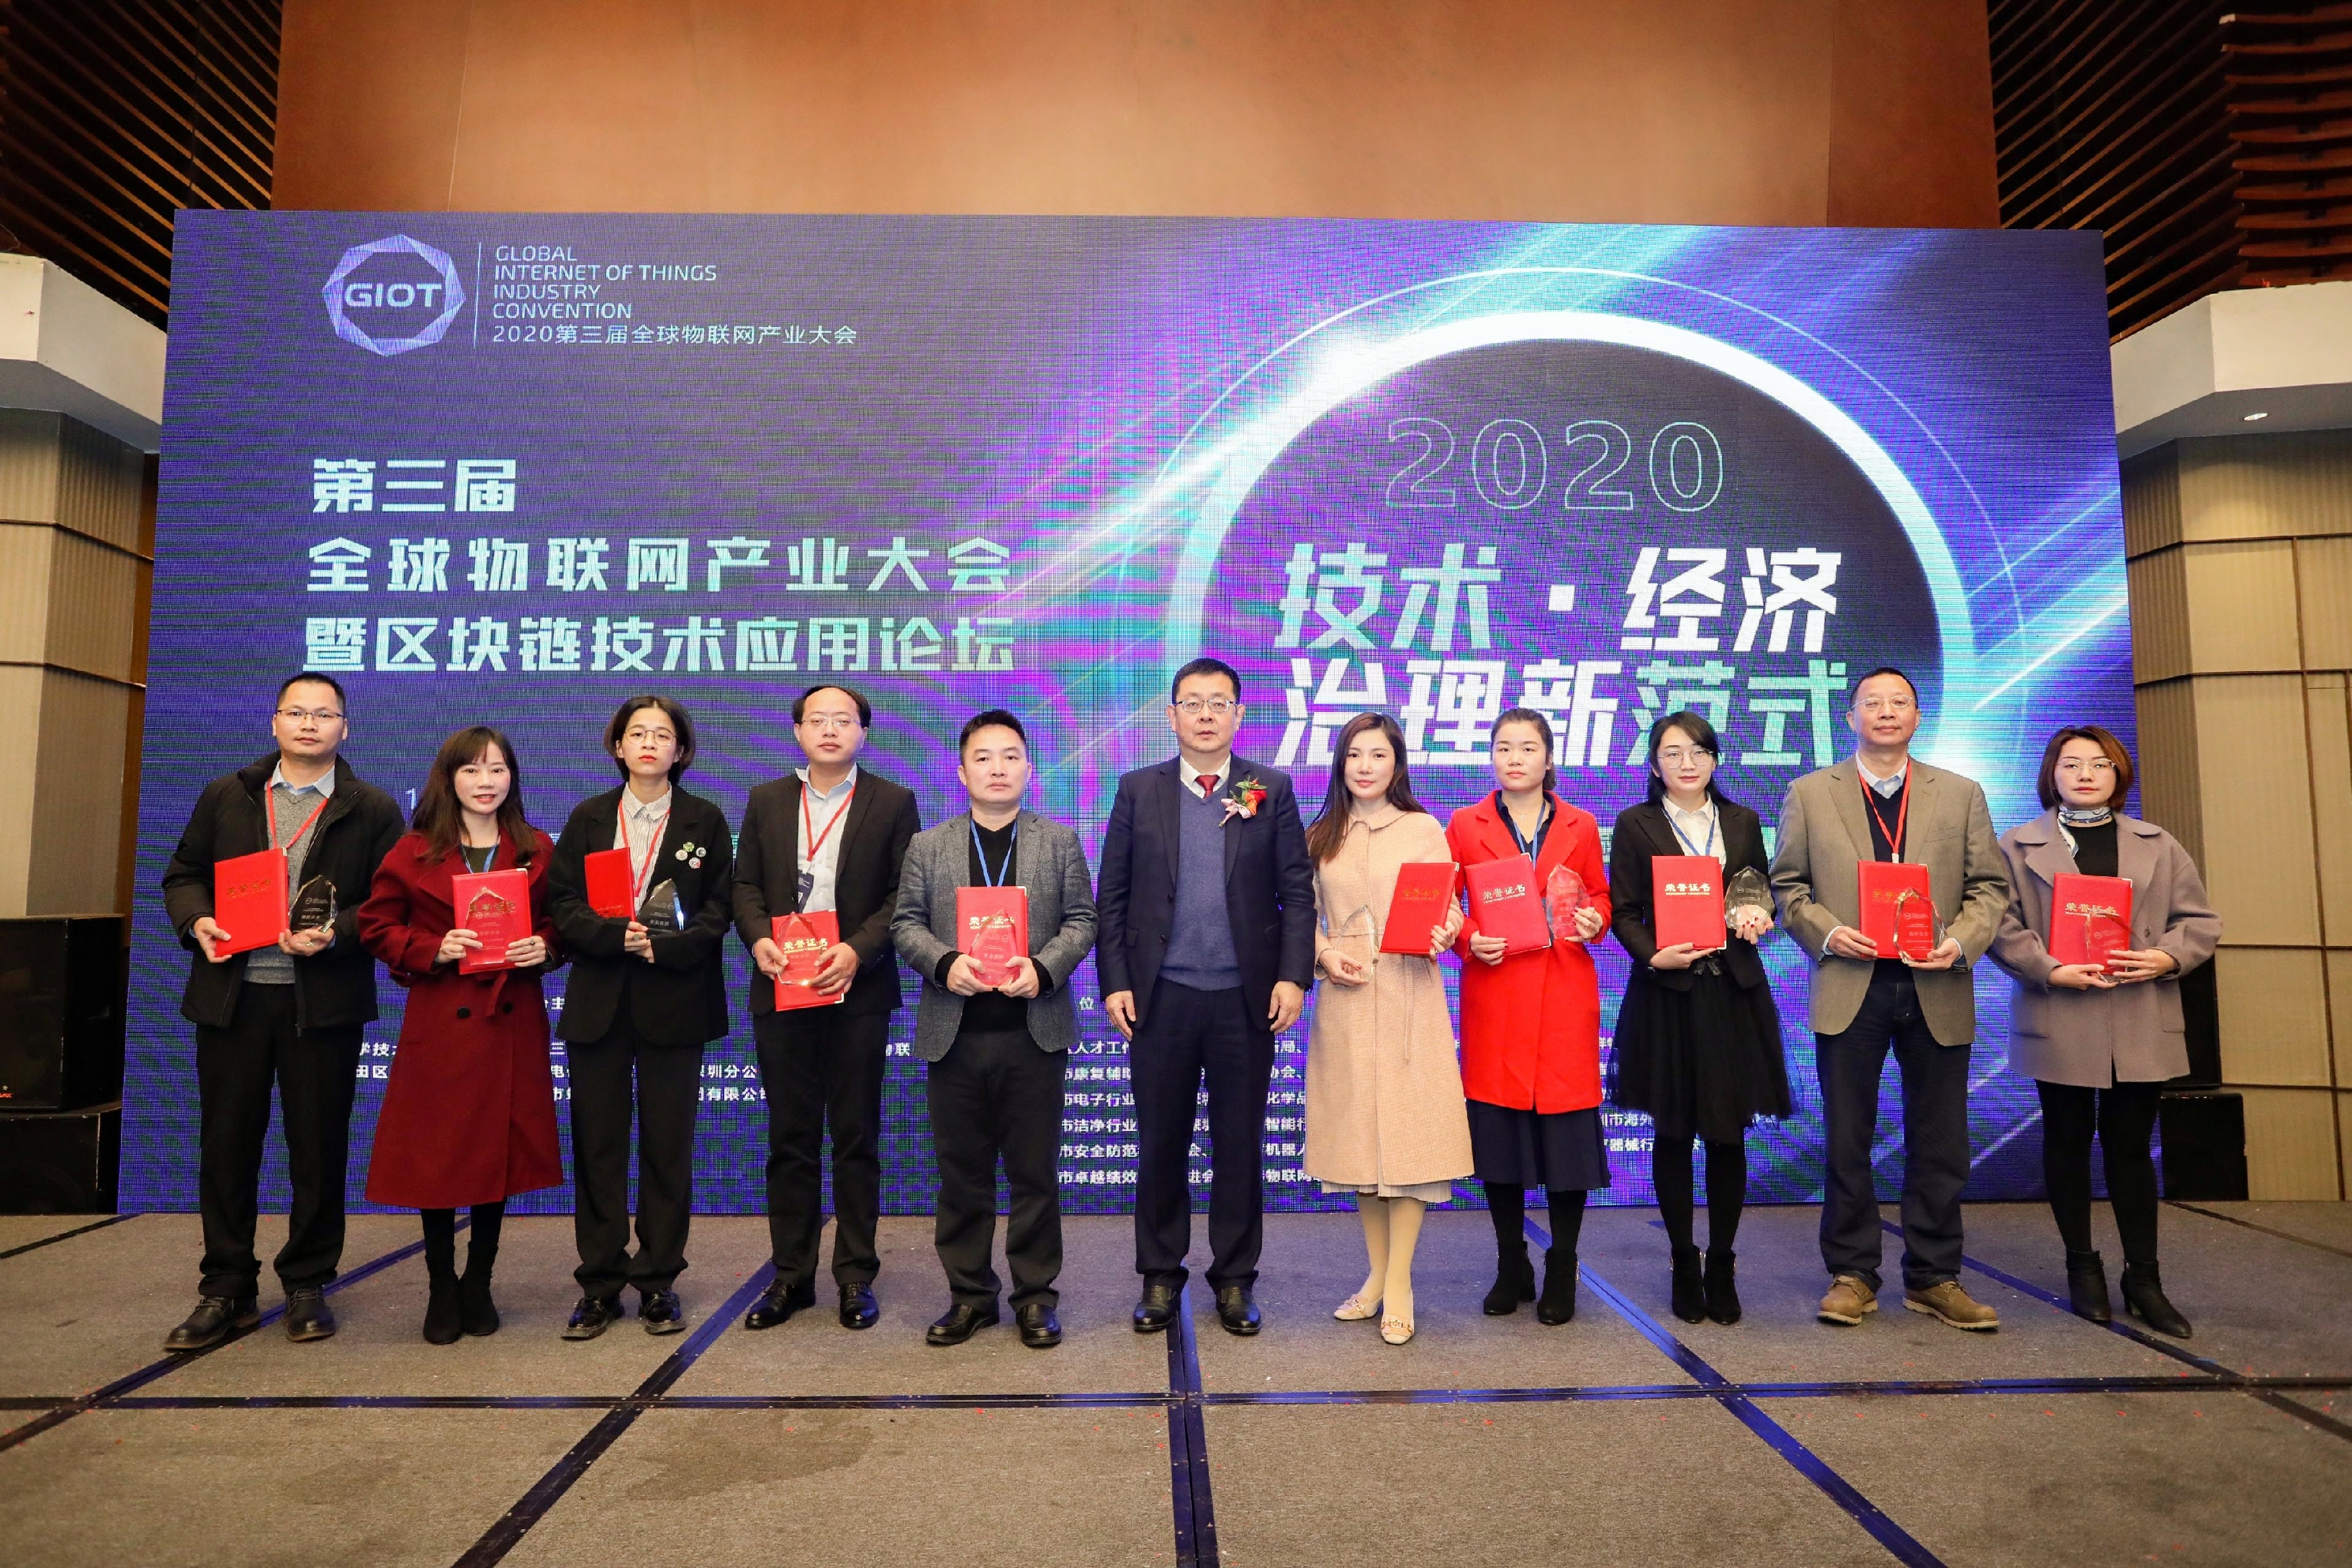 喜讯 ▏保臻科技荣获“2020 中国物联产业领航与创新应用典范评选——十大创新企业”称号